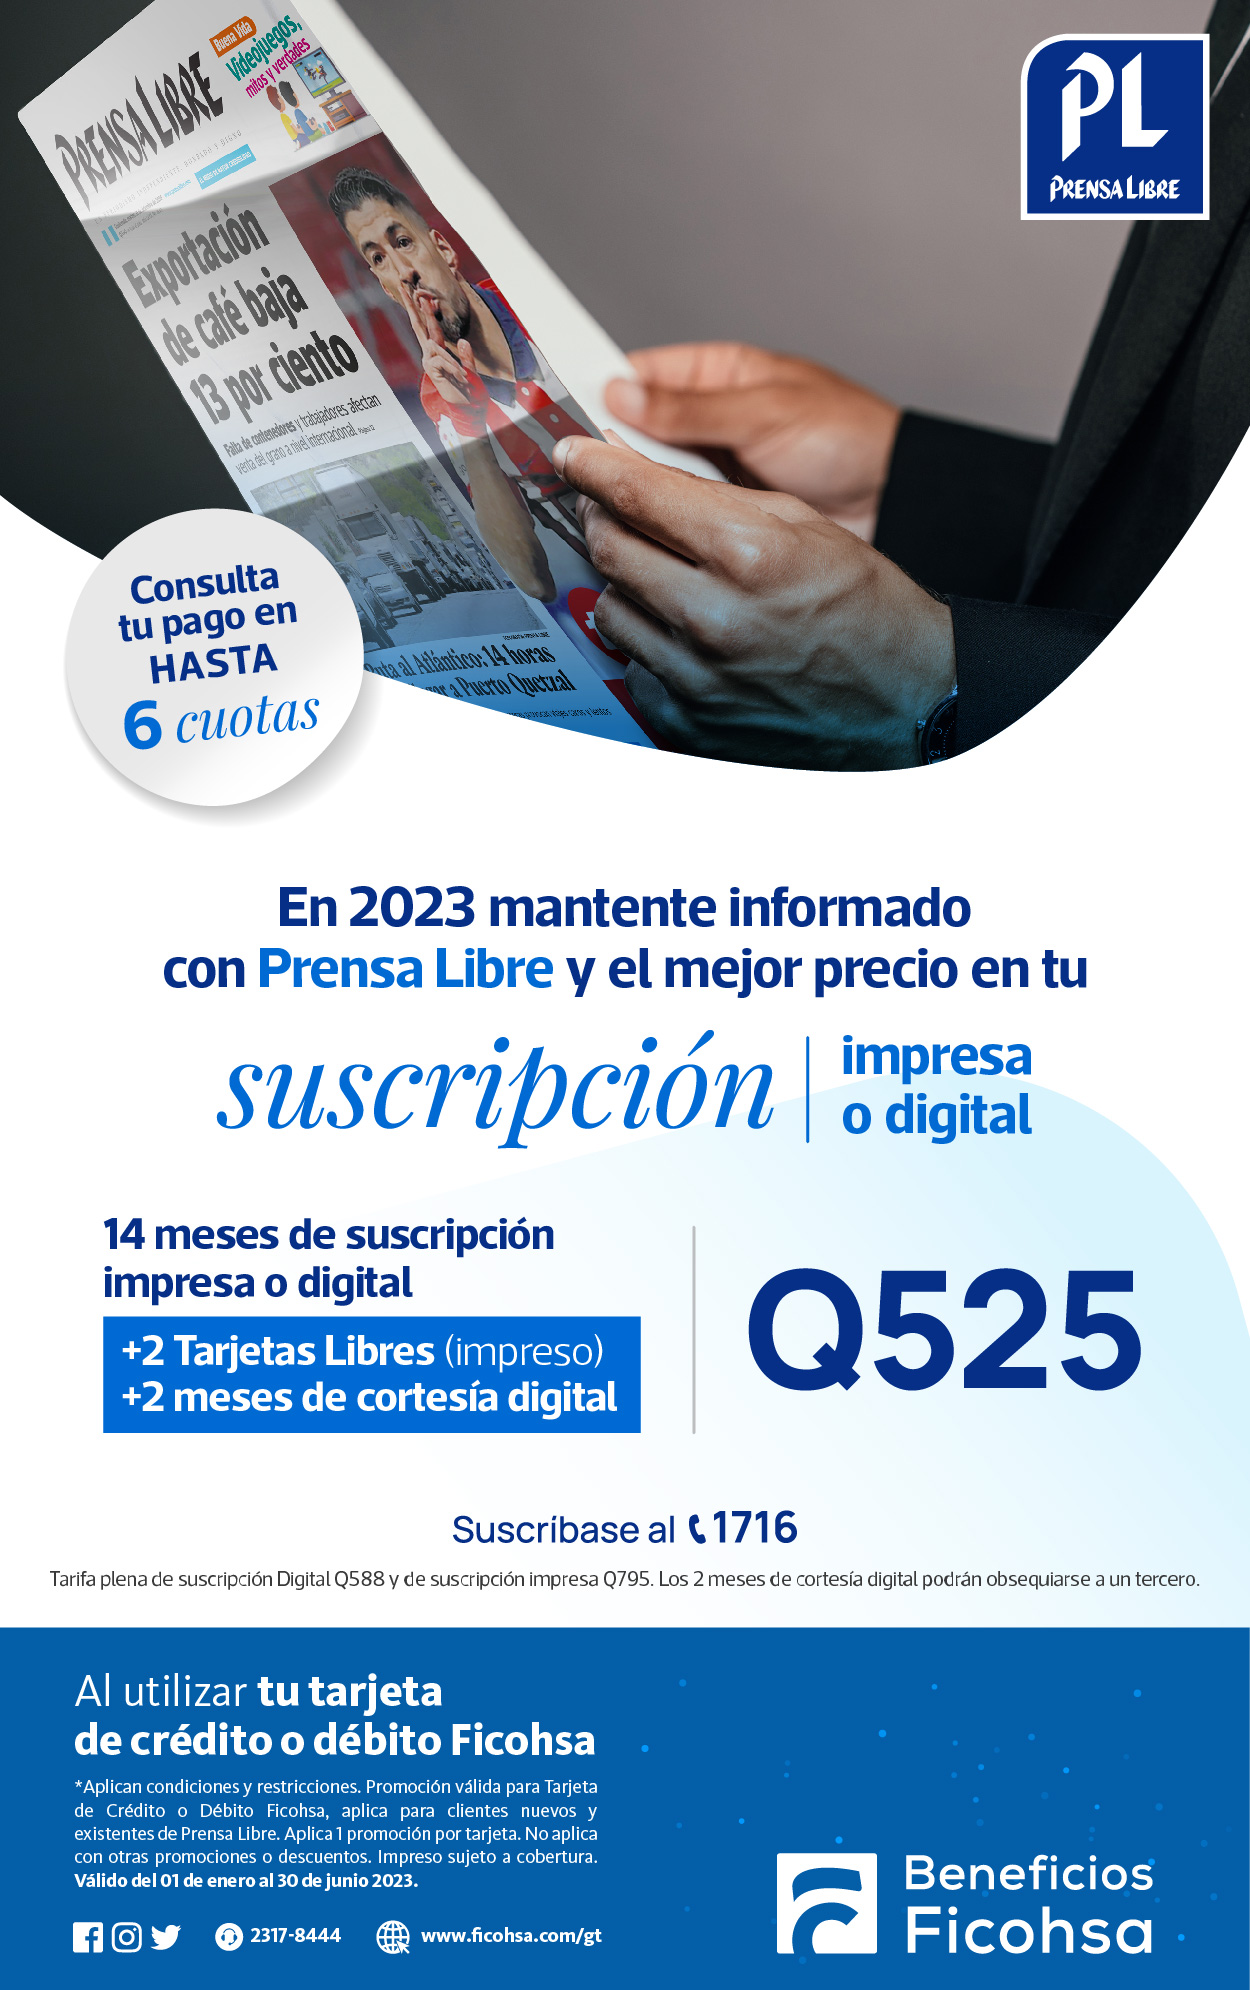 Tu Suscripción impresa o digital de Prensa Libre por 14 meses ¡al mejor precio!